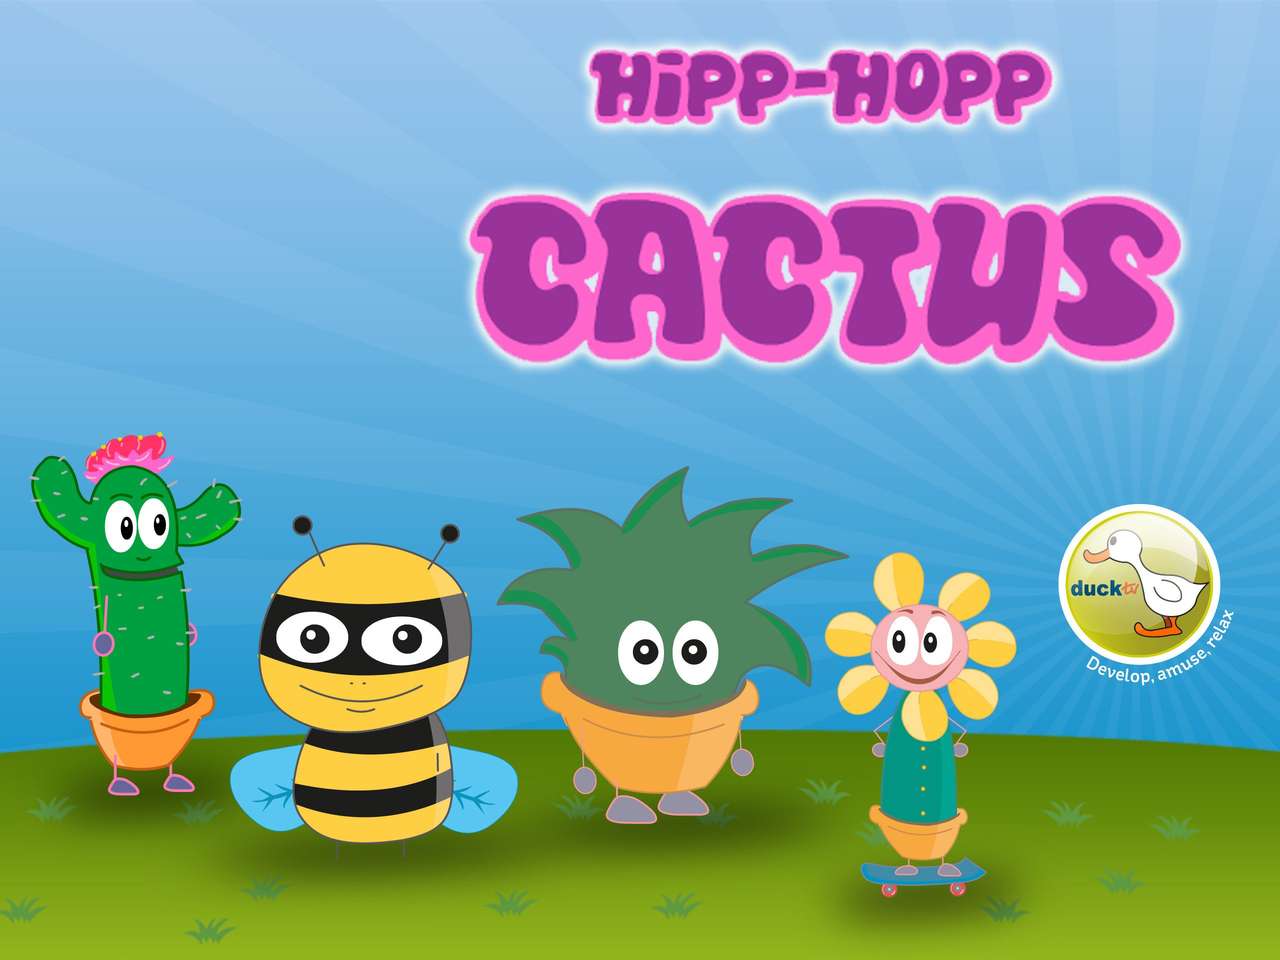 HIPP-HOPP CACTUS DUCK TV-PUZSEL pussel på nätet